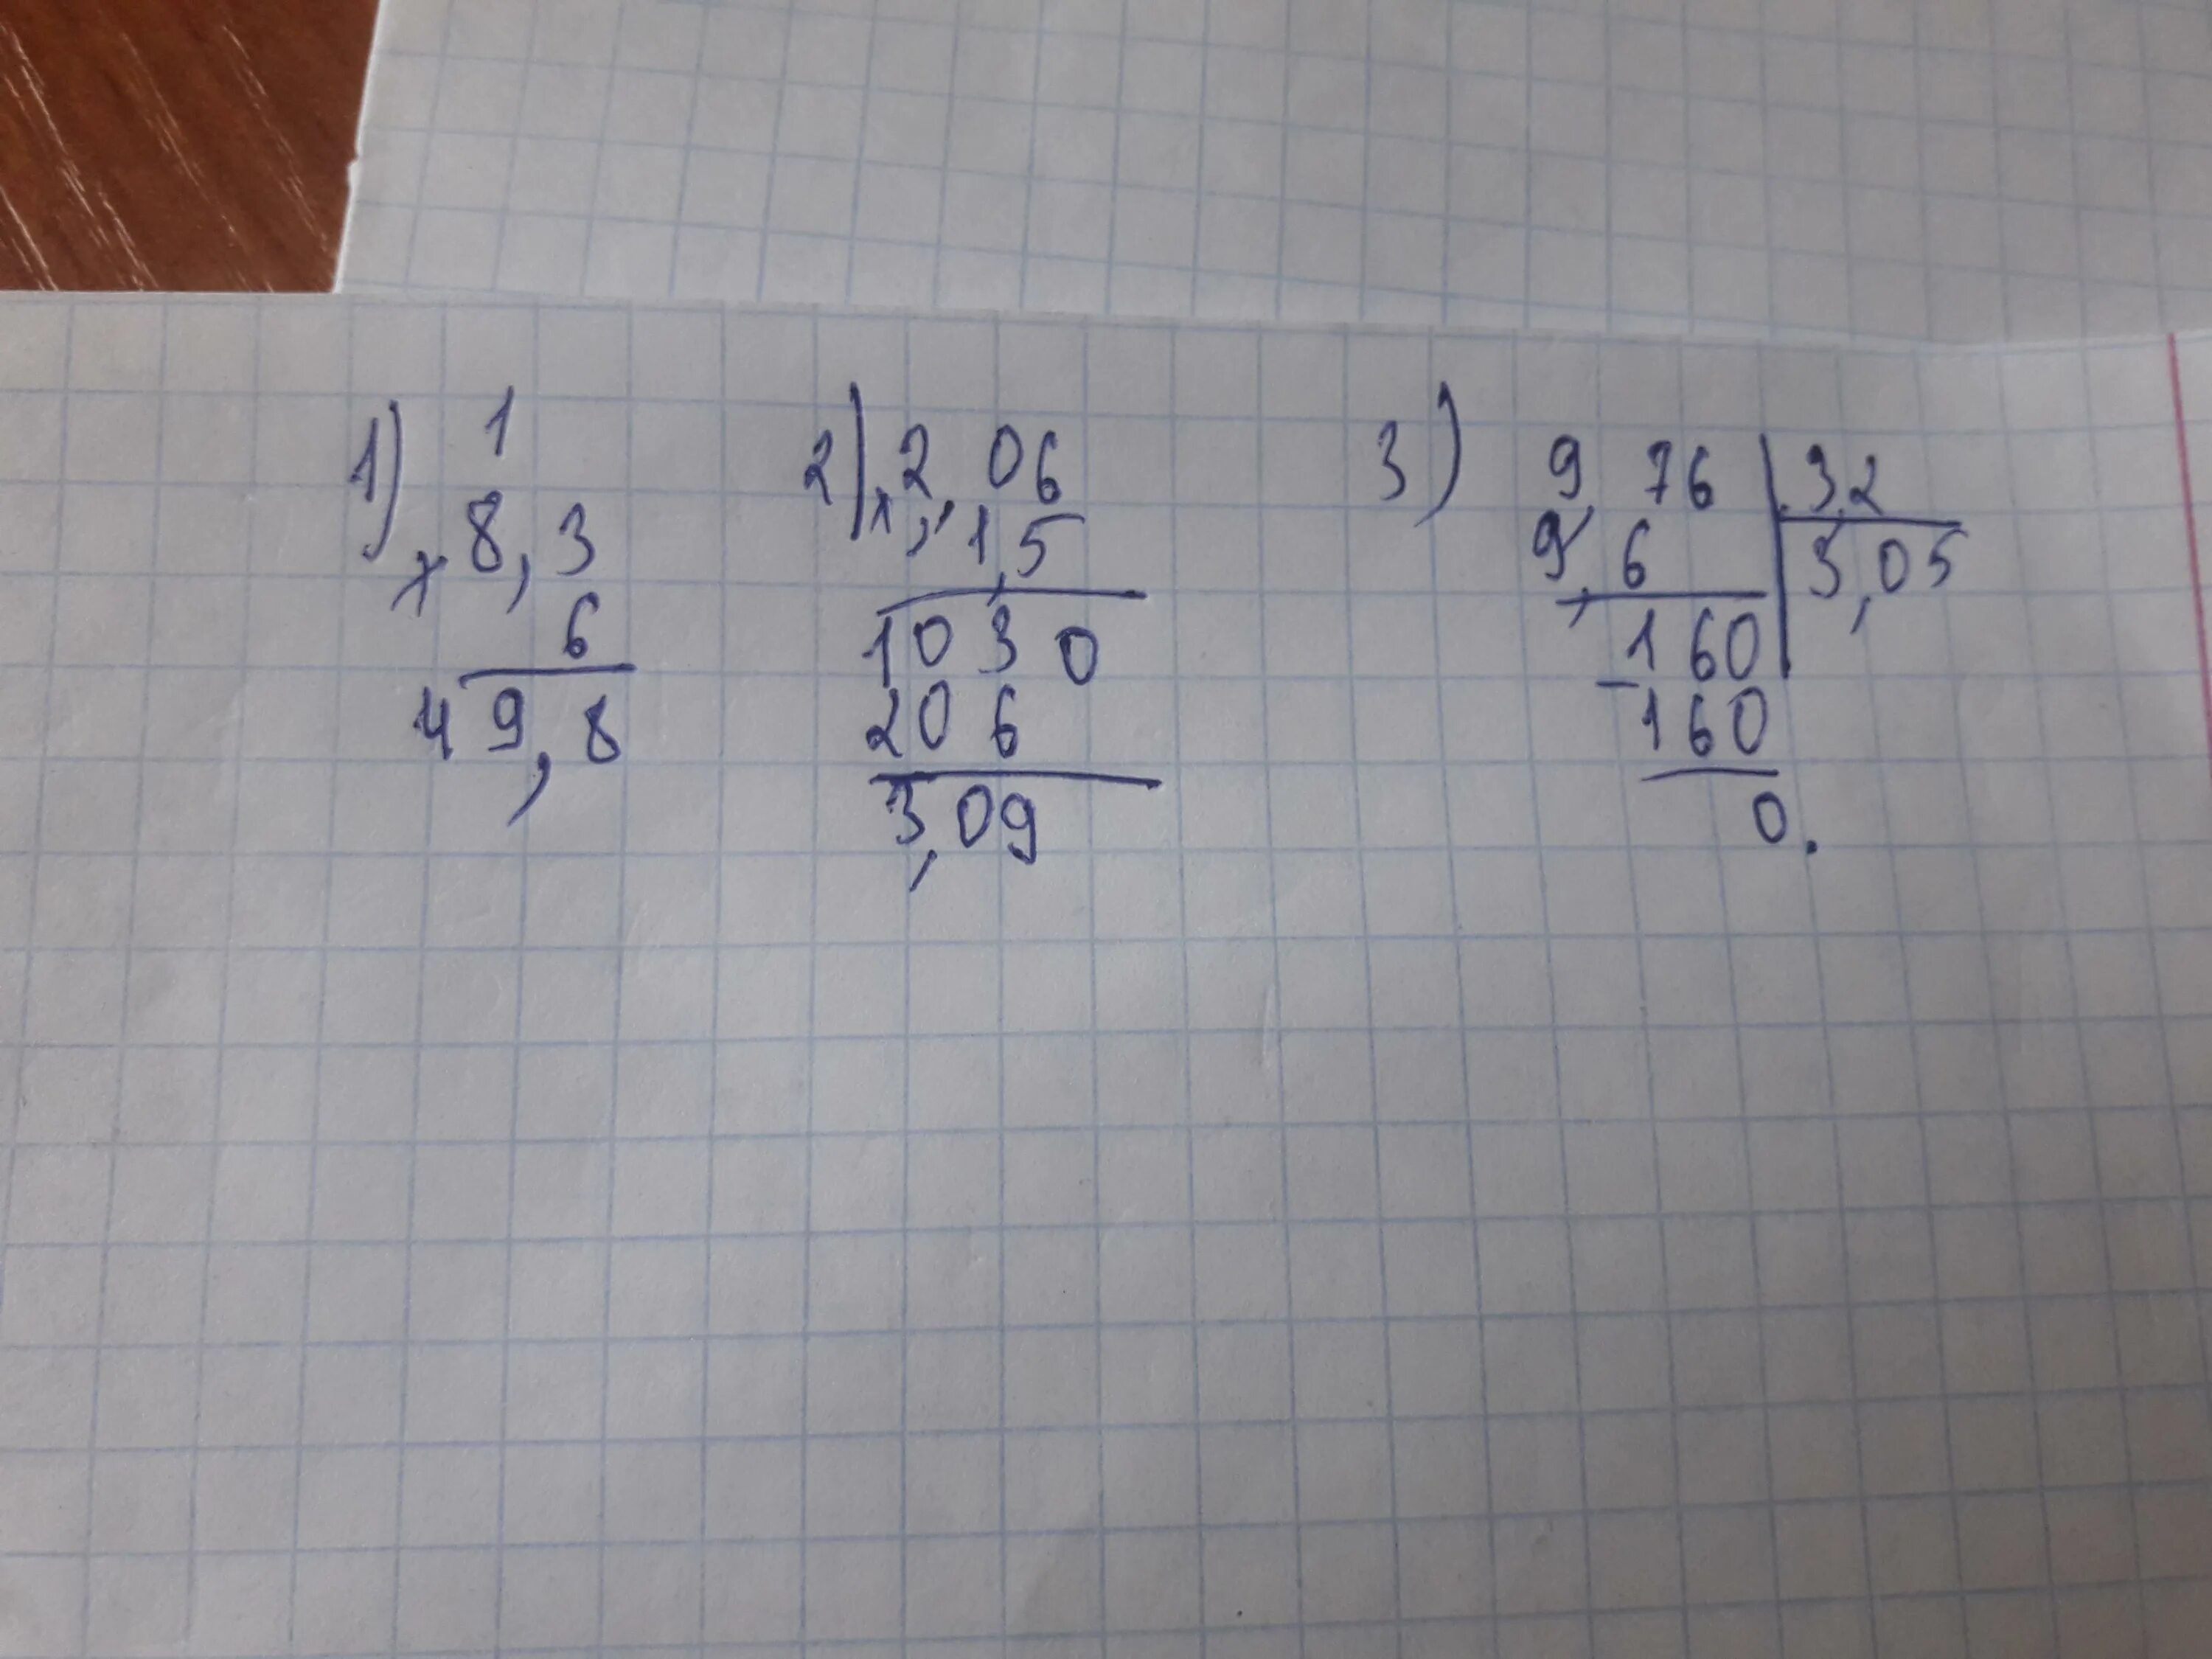 Шесть умножить на три. 2/3 Умножить на 2. 2 1/3 Умножить на 2. 1/2 Умножить на 1/2. 76 Разделить на 3.